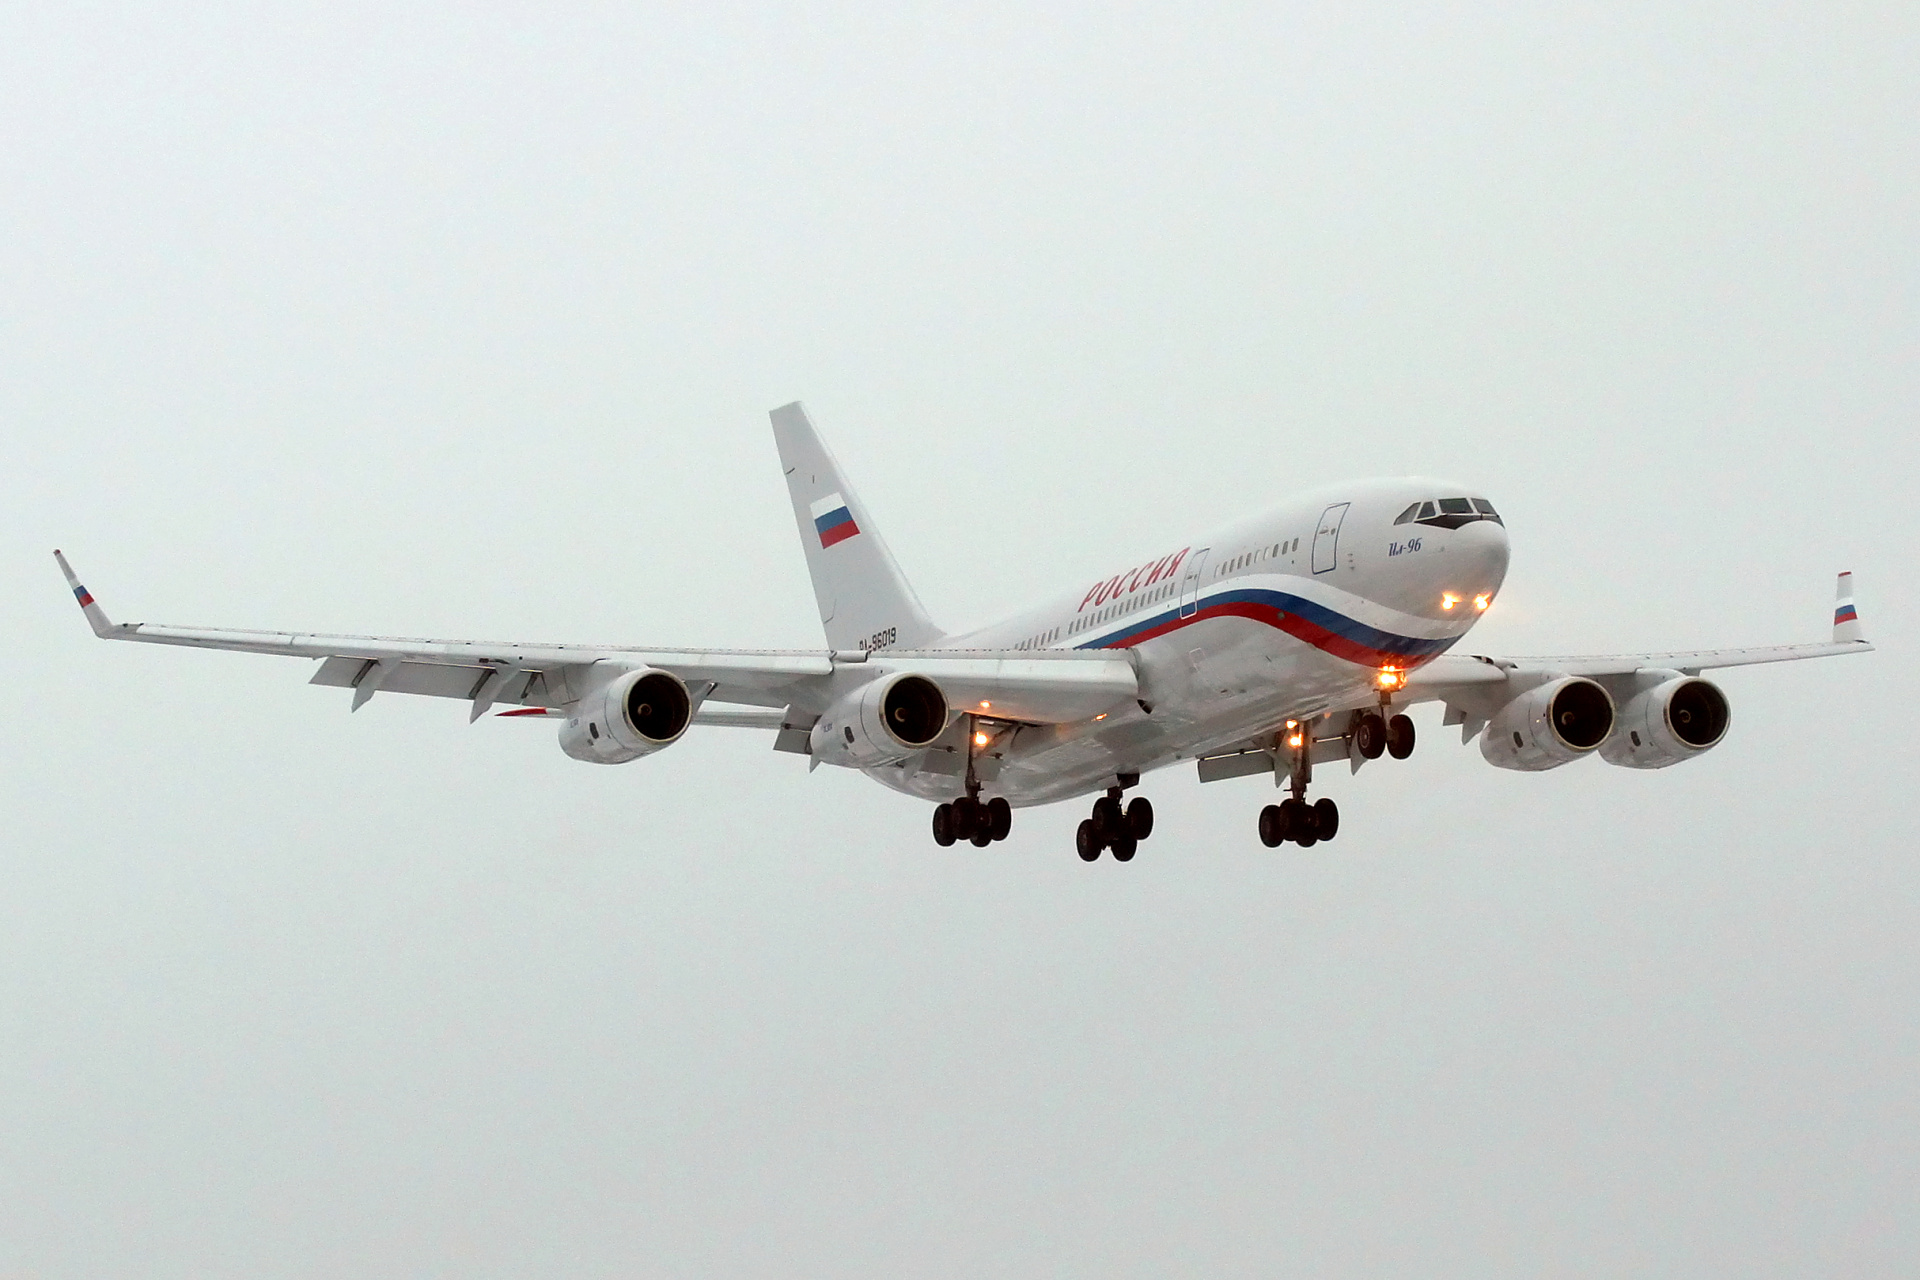 RA-96019, Russia State Transport Company (Aircraft » EPWA Spotting » Ilyushin Il-96)